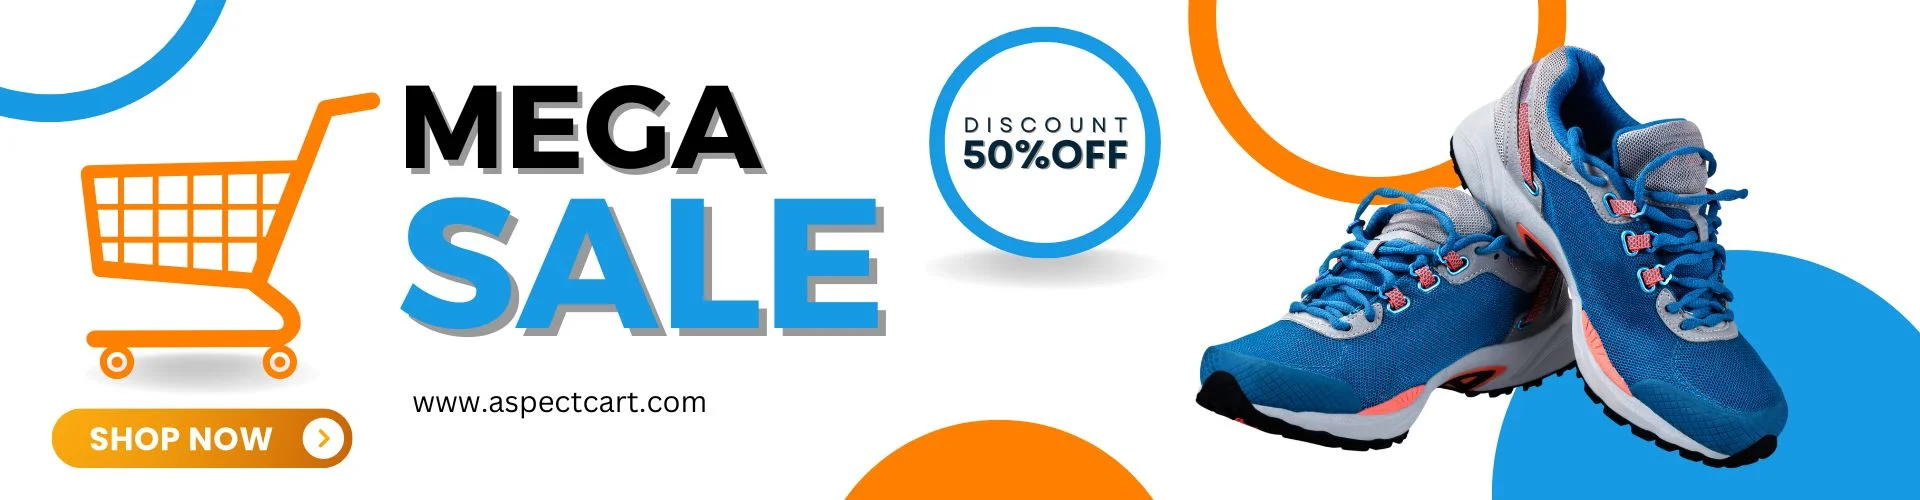 Mega Sale-banner i en online skobutik